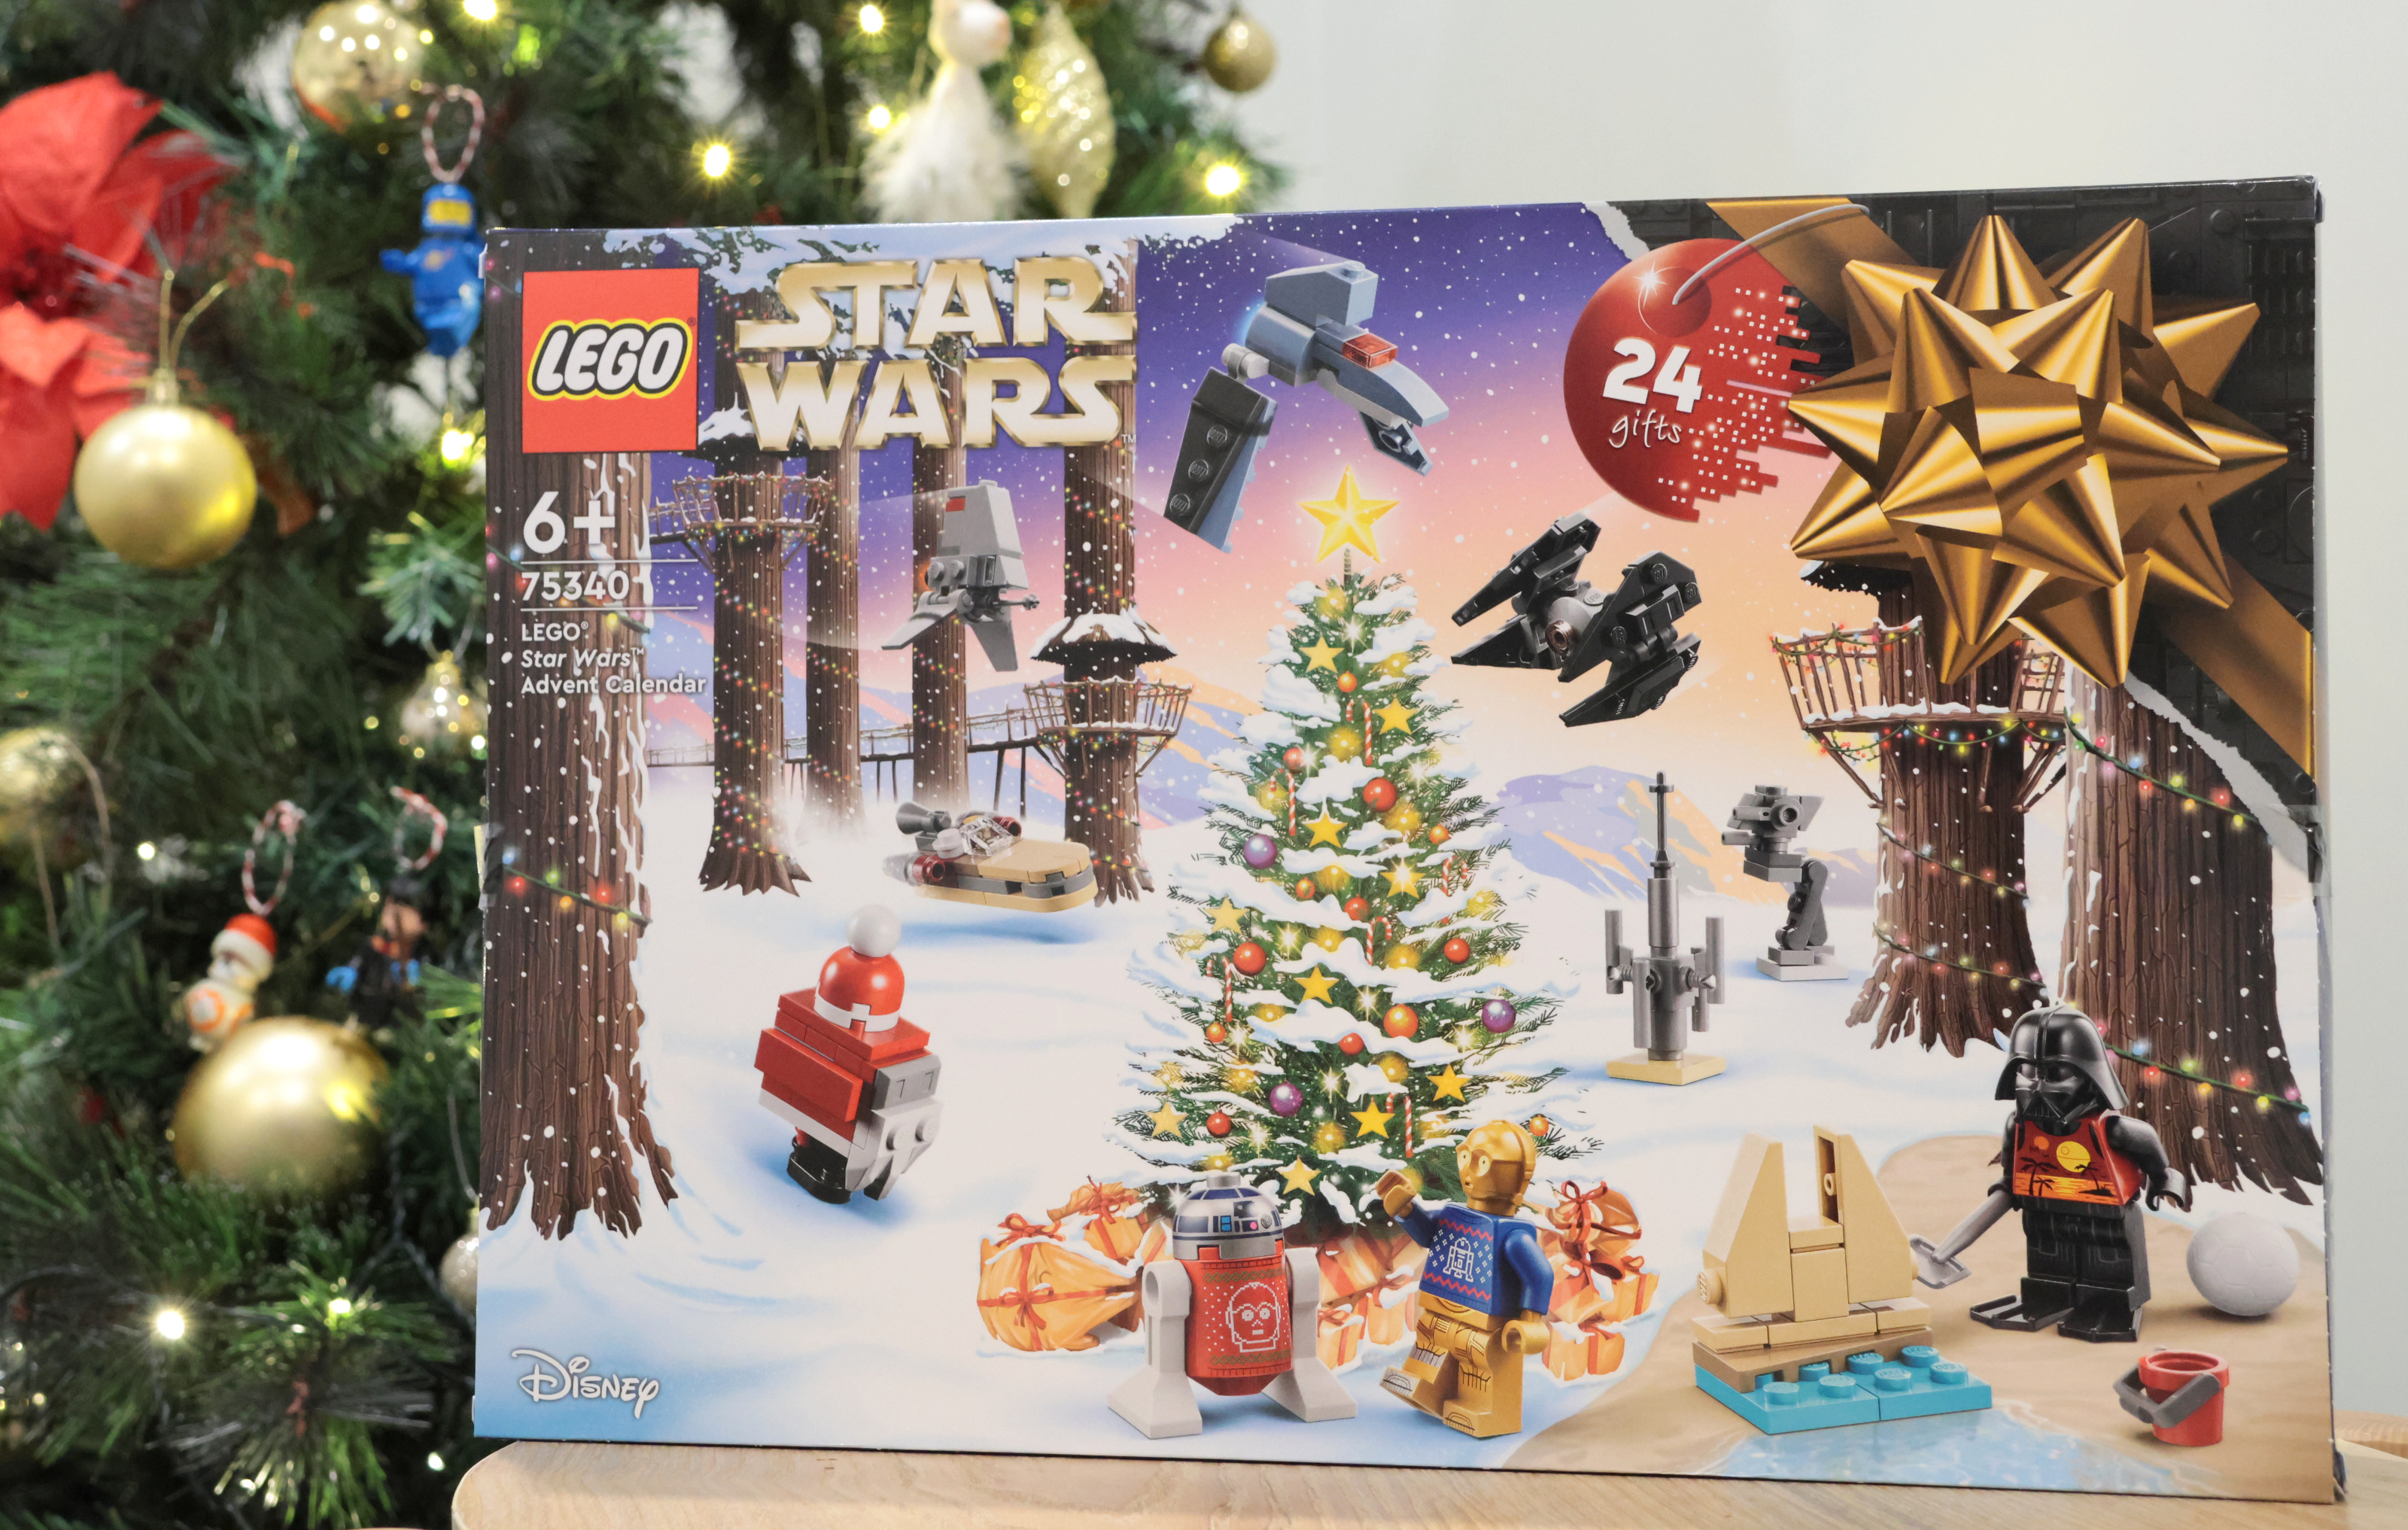 Hãy tham gia ngay Countdown hằng ngày cùng LEGO Star Wars Advent Calendar 2022! Trải nghiệm niềm vui đếm ngược các ngày đến Giáng sinh với những sản phẩm LEGO Star Wars tuyệt đẹp và đầy bất ngờ. Chắc chắn sự kiện này sẽ mang đến cho bạn và gia đình những khoảnh khắc thú vị không thể quên trong mùa lễ hội sắp tới.